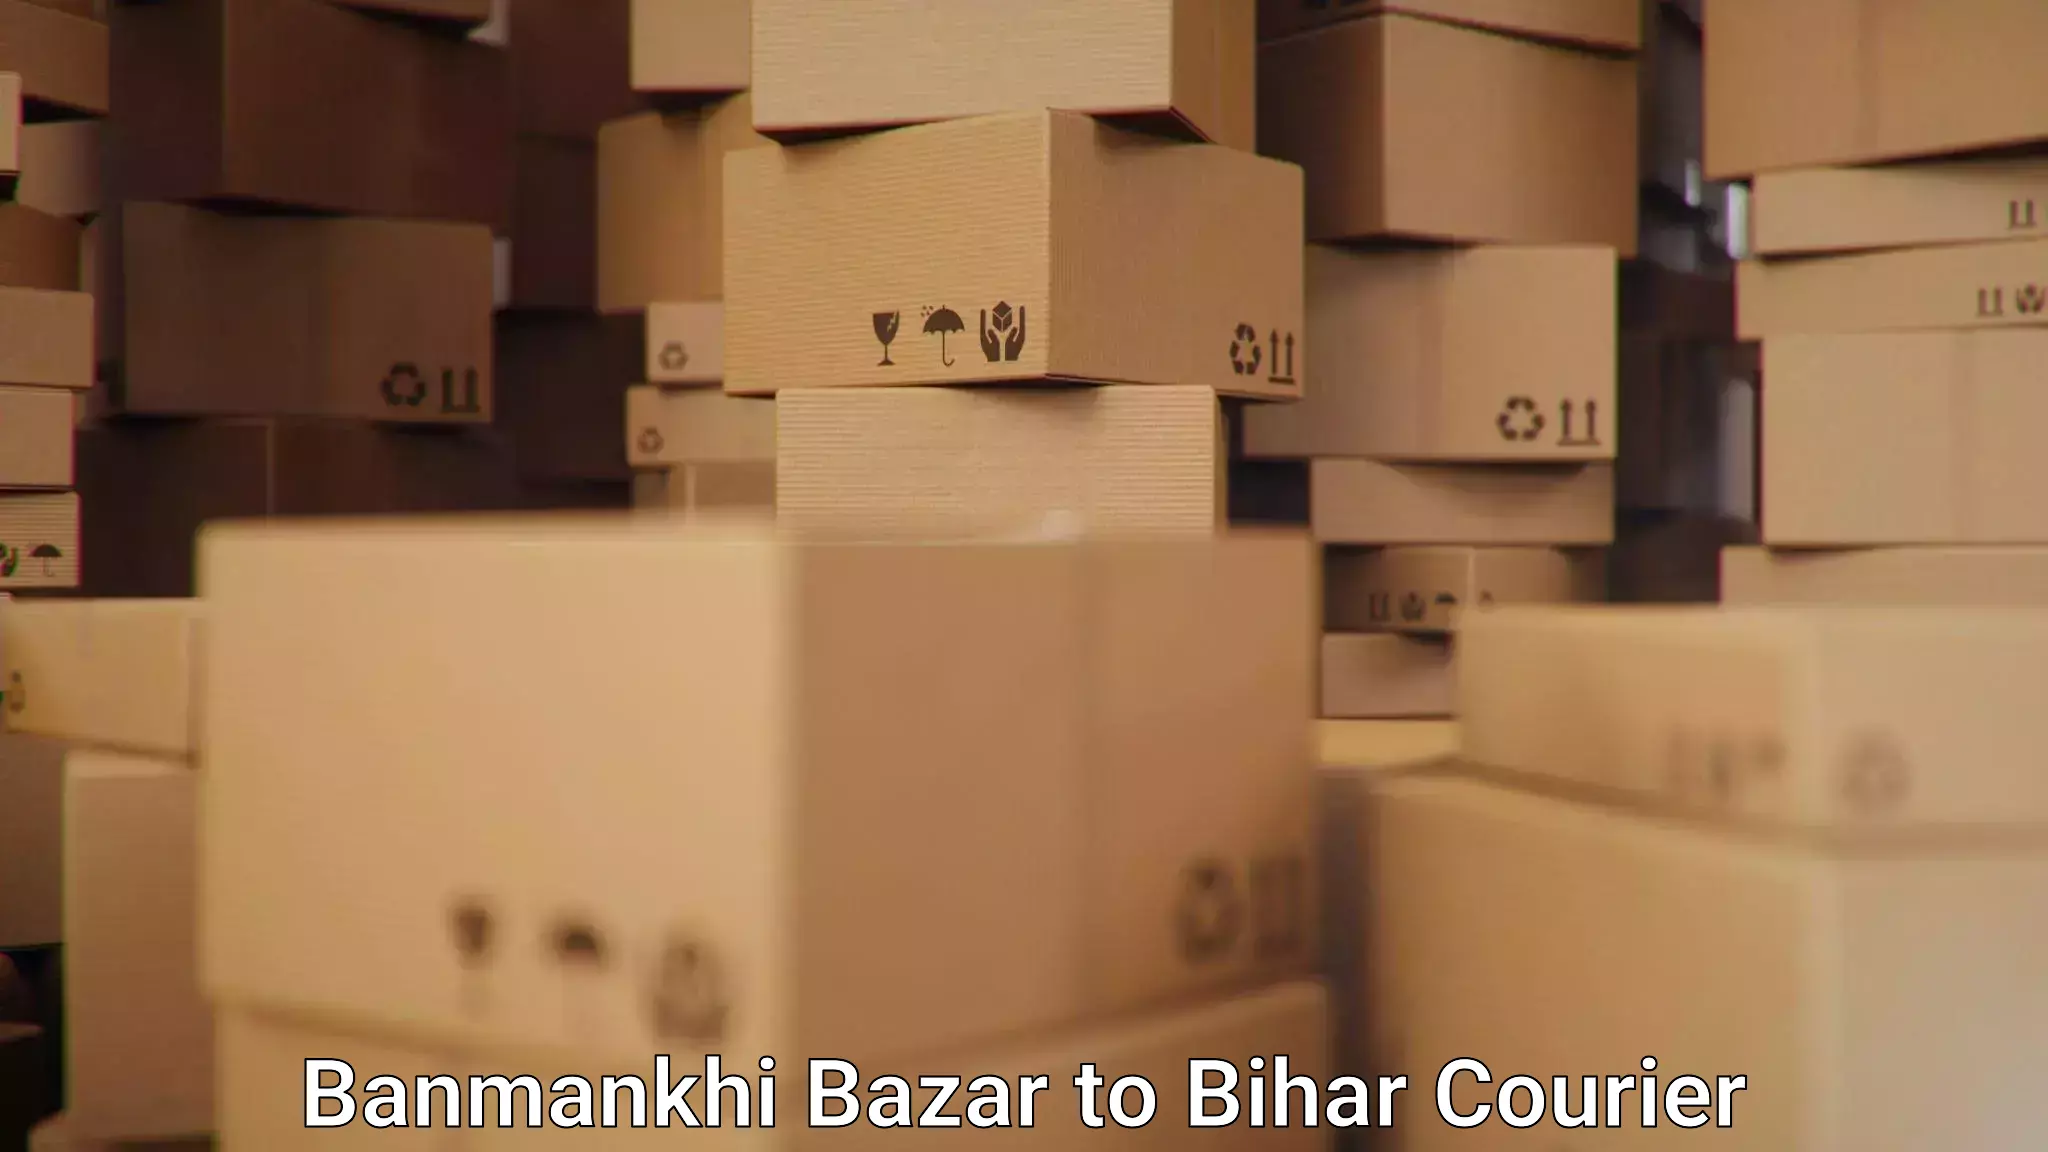 Flexible parcel services Banmankhi Bazar to Gaya